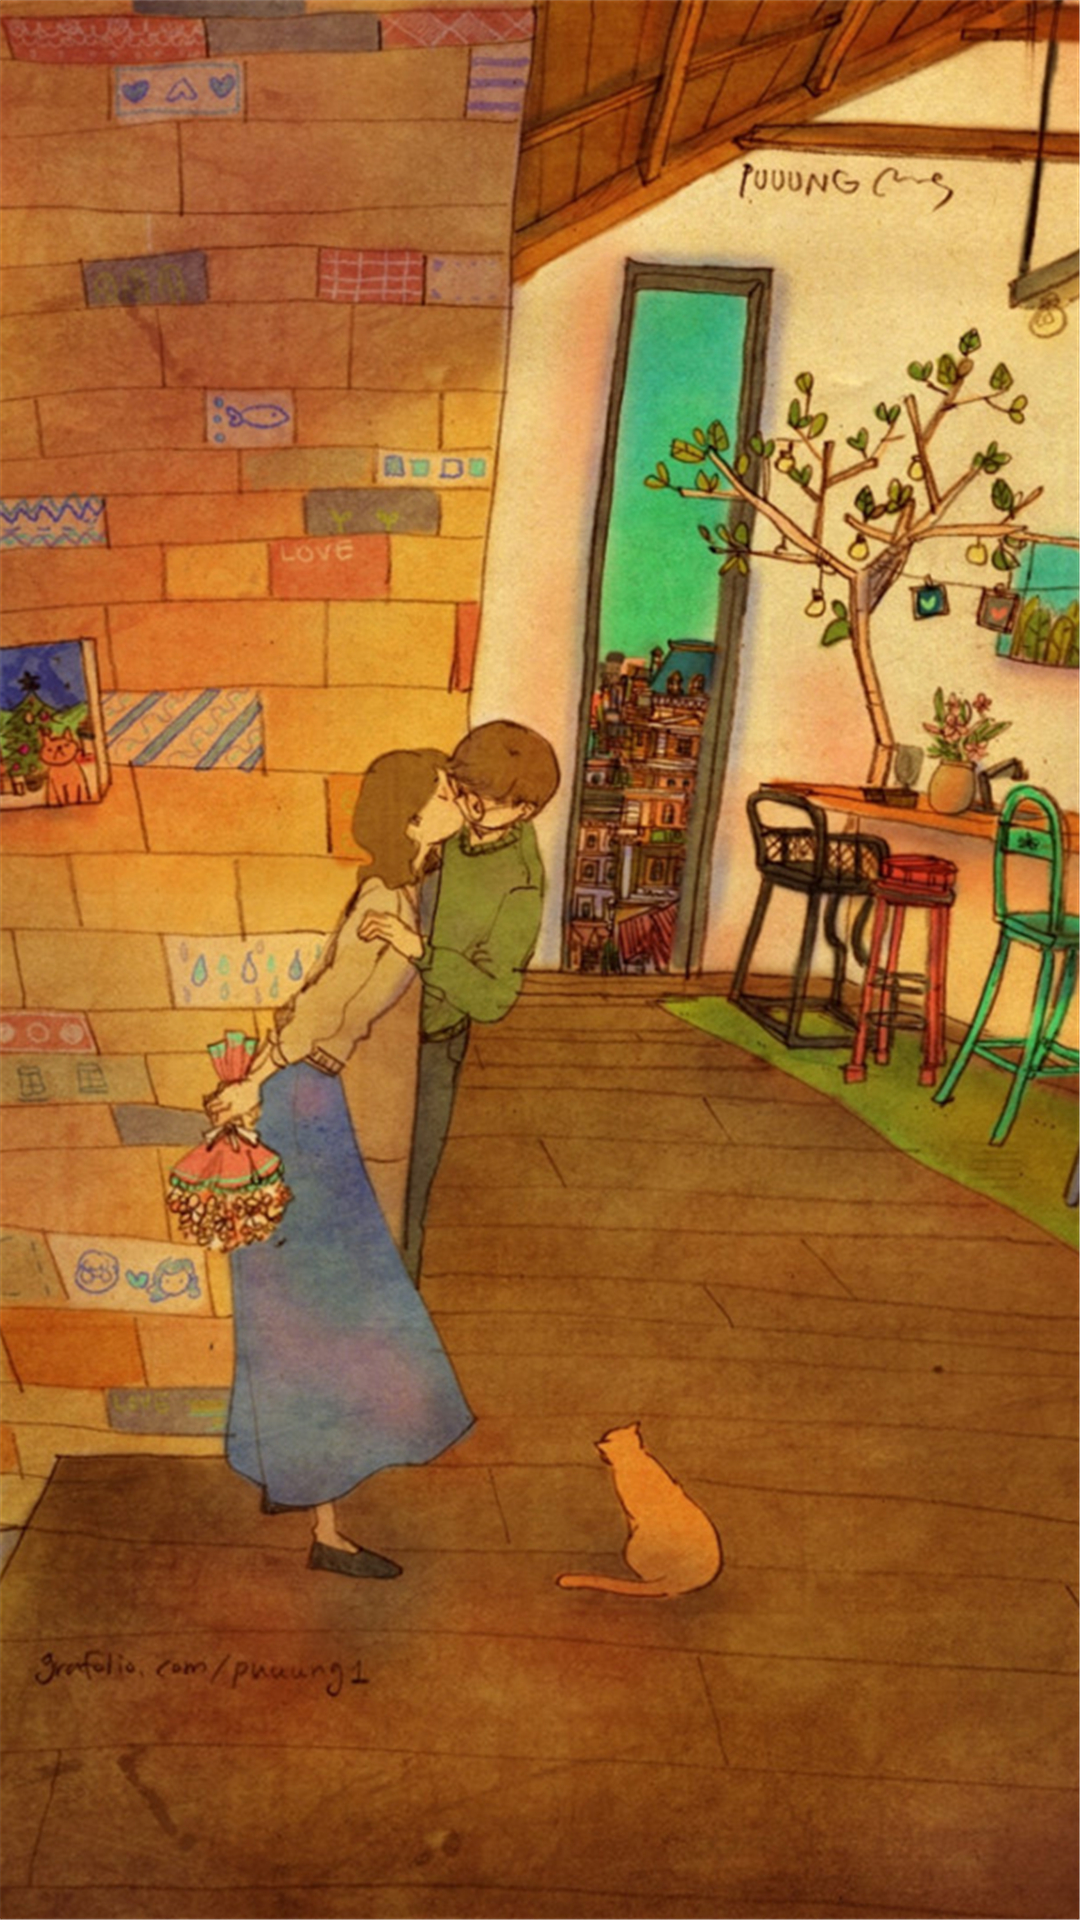 韩国插画师puuung的暖心爱情故事插画 壁纸 … - 堆糖，美图壁纸兴趣社区